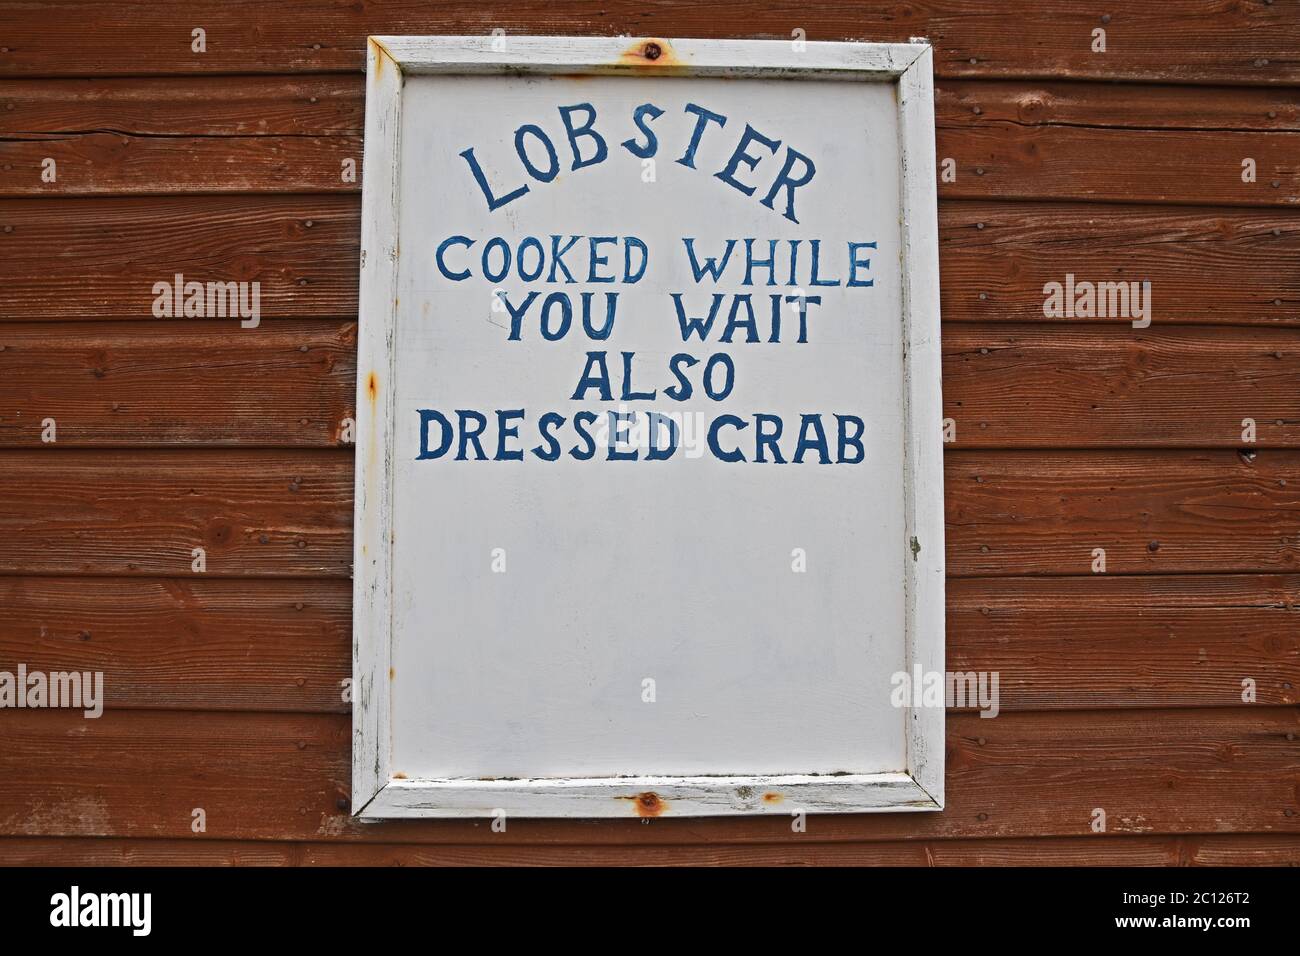 Autentico segno - aragosta cucinata mentre si aspetta anche granchio vestito. Preso a Coral Harbour, East Neuk di Fife, Scozia, Regno Unito. Foto Stock